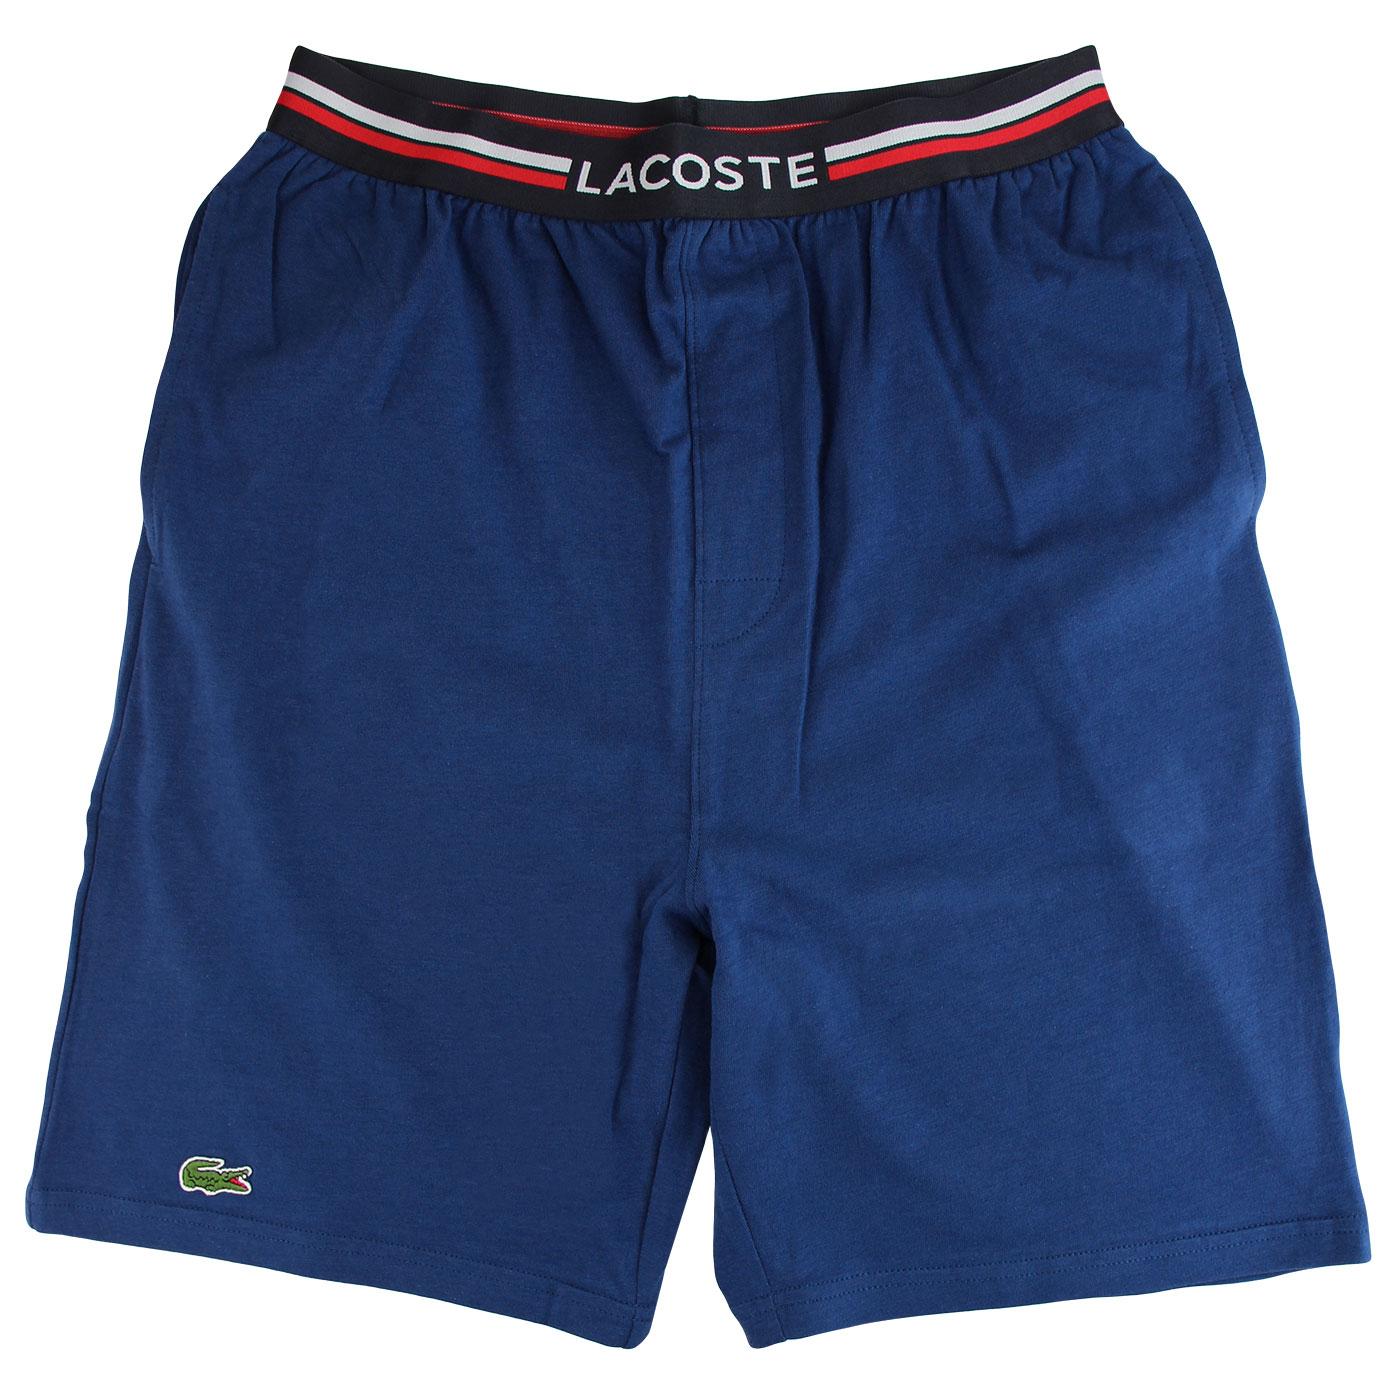 LACOSTE Retro Stripe Band Lounge Shorts (Blue)